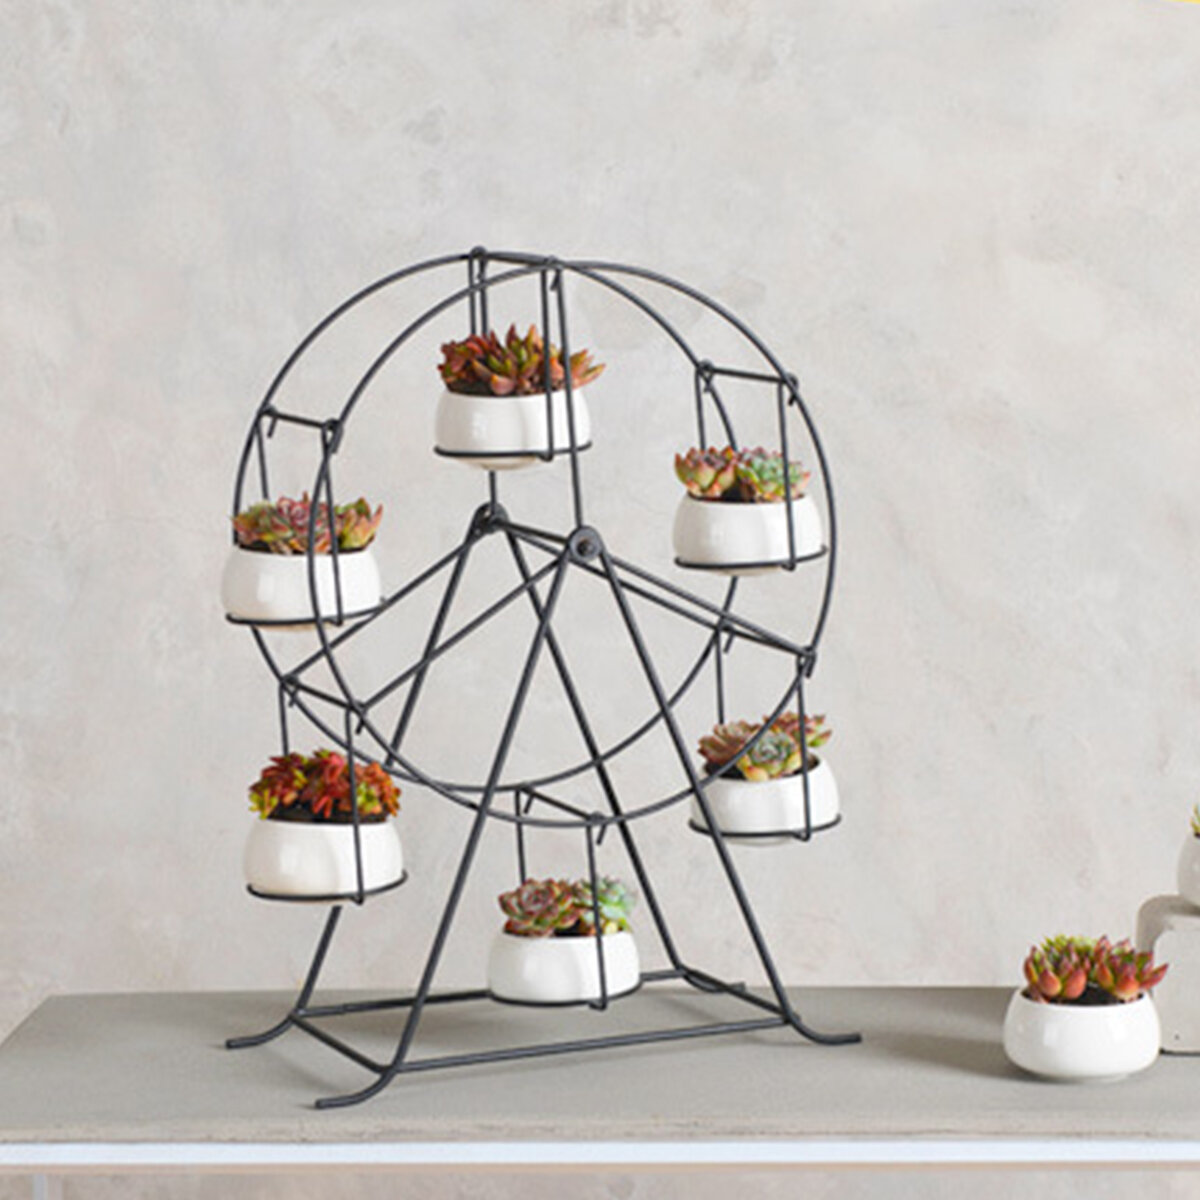 Image of Succulent Planter Ferris Wheel Iron Plant Holders Set Indoor Garden Pots